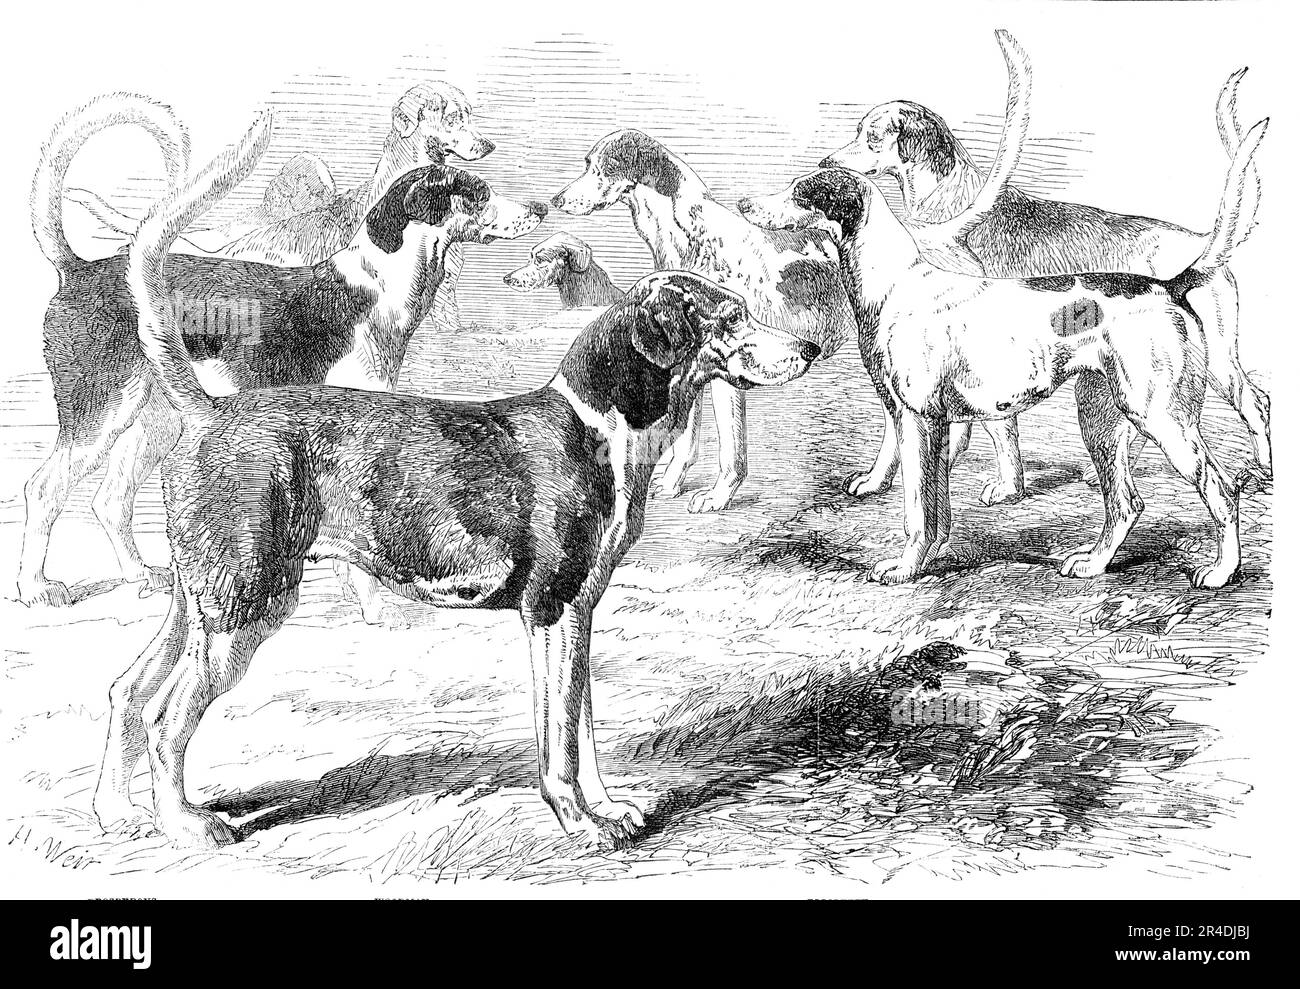 Royal Staghounds: Profious, Woodman, Rigolette, Chanticleer, 1856. „Die königlichen Staghunde, wie wir bereits erwähnt haben, sind wohlgezüchtete Fuchshunde... Obwohl wir nicht zugeben können, dass die Hirschjagd etwas Besseres ist, als eine Behelfslösung für etwas unendlich höheres, was bei Männern entschuldigt werden kann, die keine Zeit für die langen, unsicheren Tage der Fuchsjagd in einem guten Land haben; Aber wir müssen zugeben, dass ein guter Lauf... die beste Reitkunst auf die Probe stellen wird; und wir wissen nicht, wie man einen Tag angenehmer verbringen kann als auf einer Reise zu den Ascot Kennels und den Swinley Deer Kaddocks... das Königliche Rudel litt einst unter Stockfoto